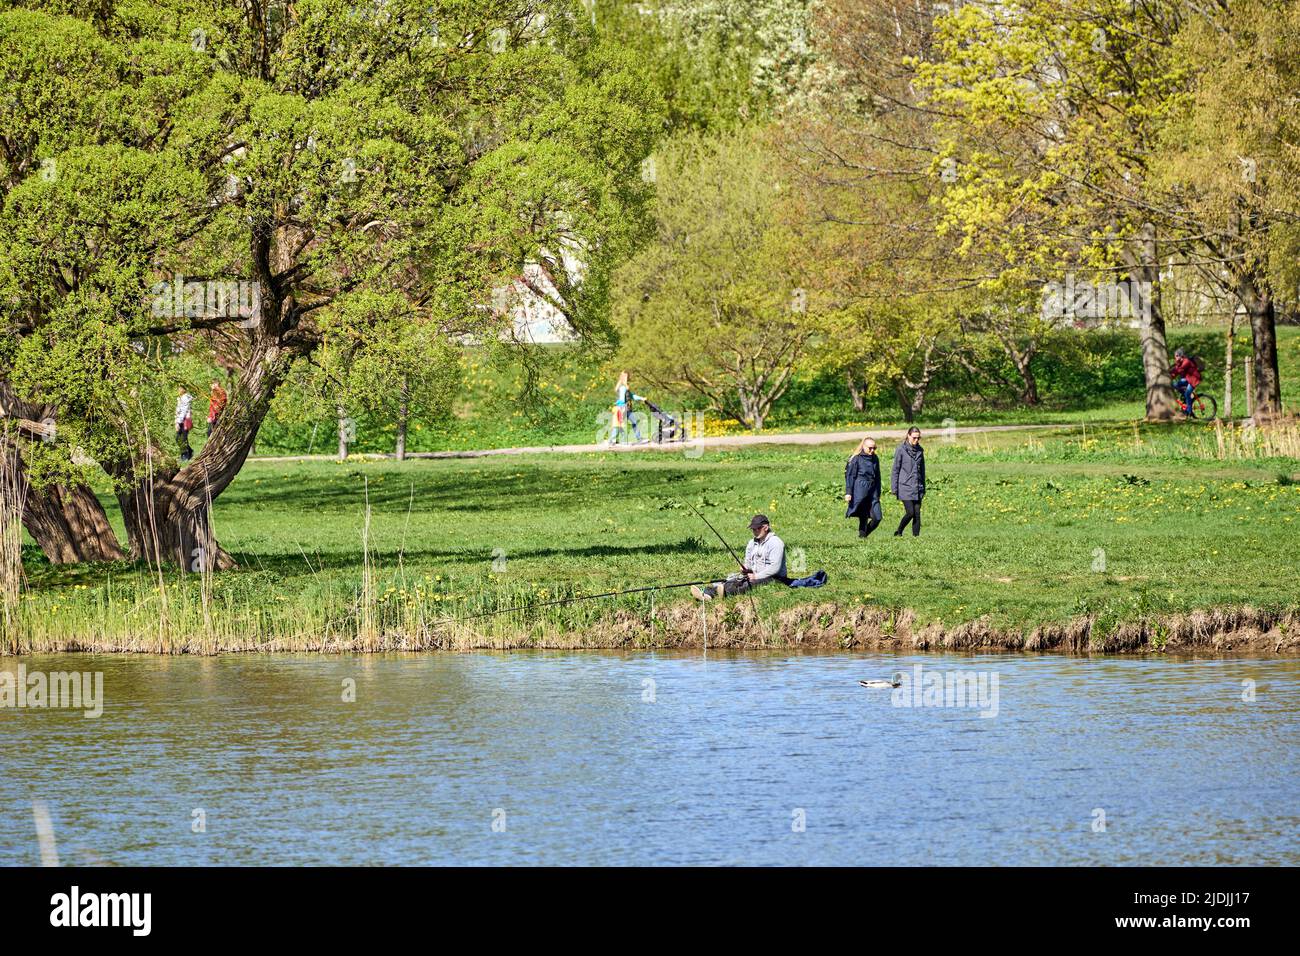 Riga, Lettonie - 8 mai 2022: Un pêcheur est assis avec une canne à pêche sur la rive d'un lac dans un parc public. Herbe verte autour. Les gens marchent à distance. Banque D'Images